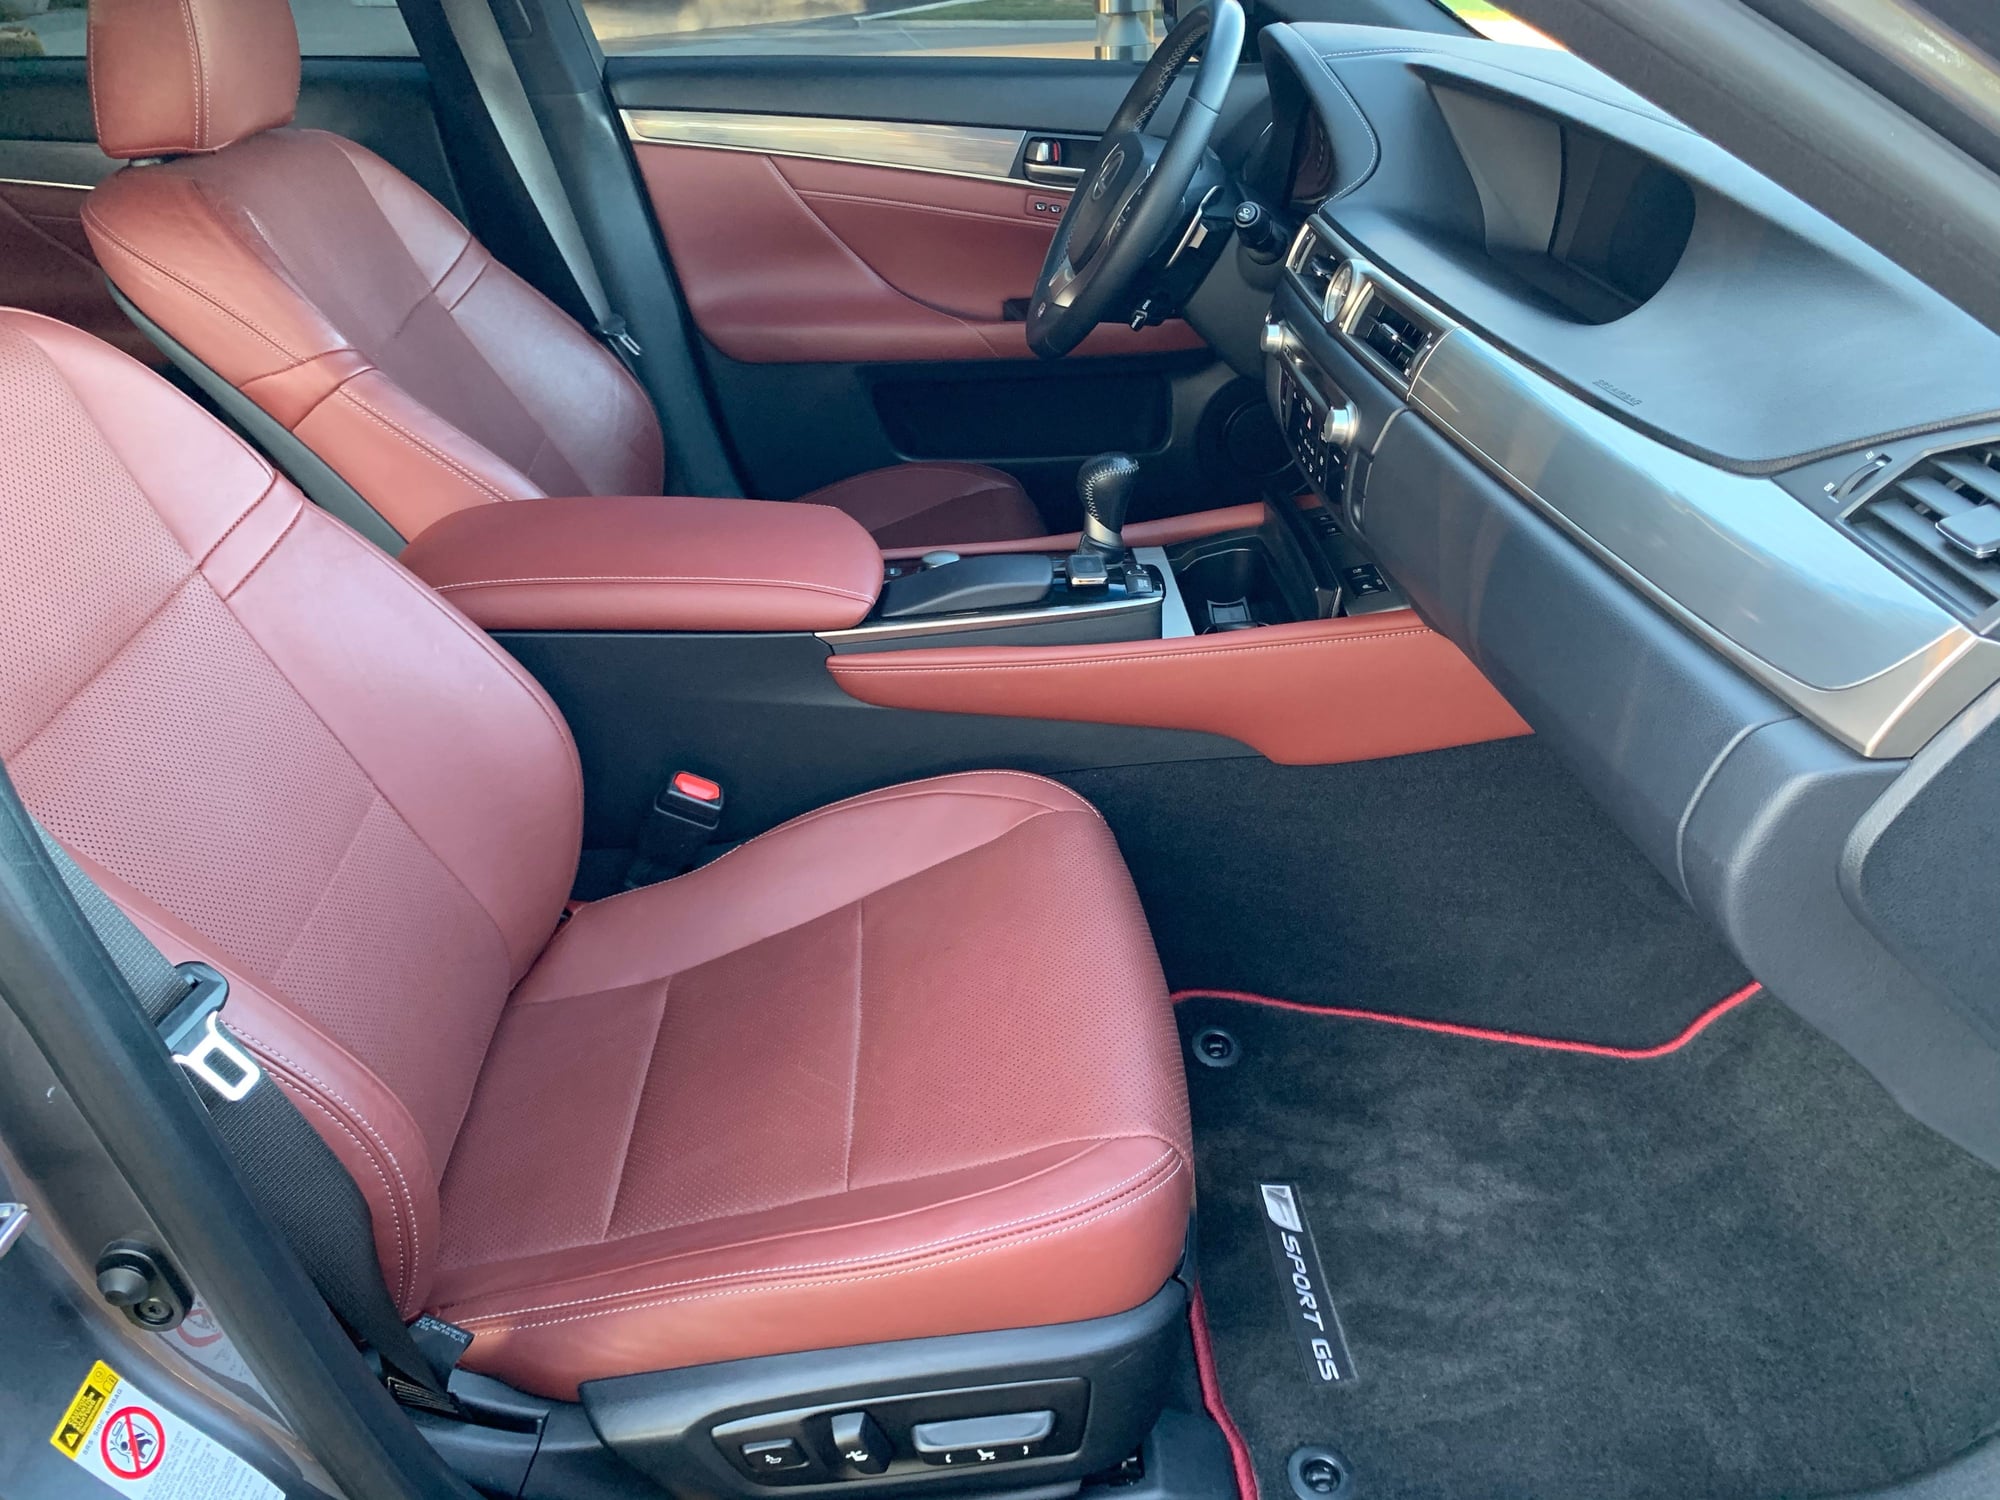 Mint 15 Lexus Gs350 F Sport Red Interior Blackout Package Clublexus Lexus Forum Discussion